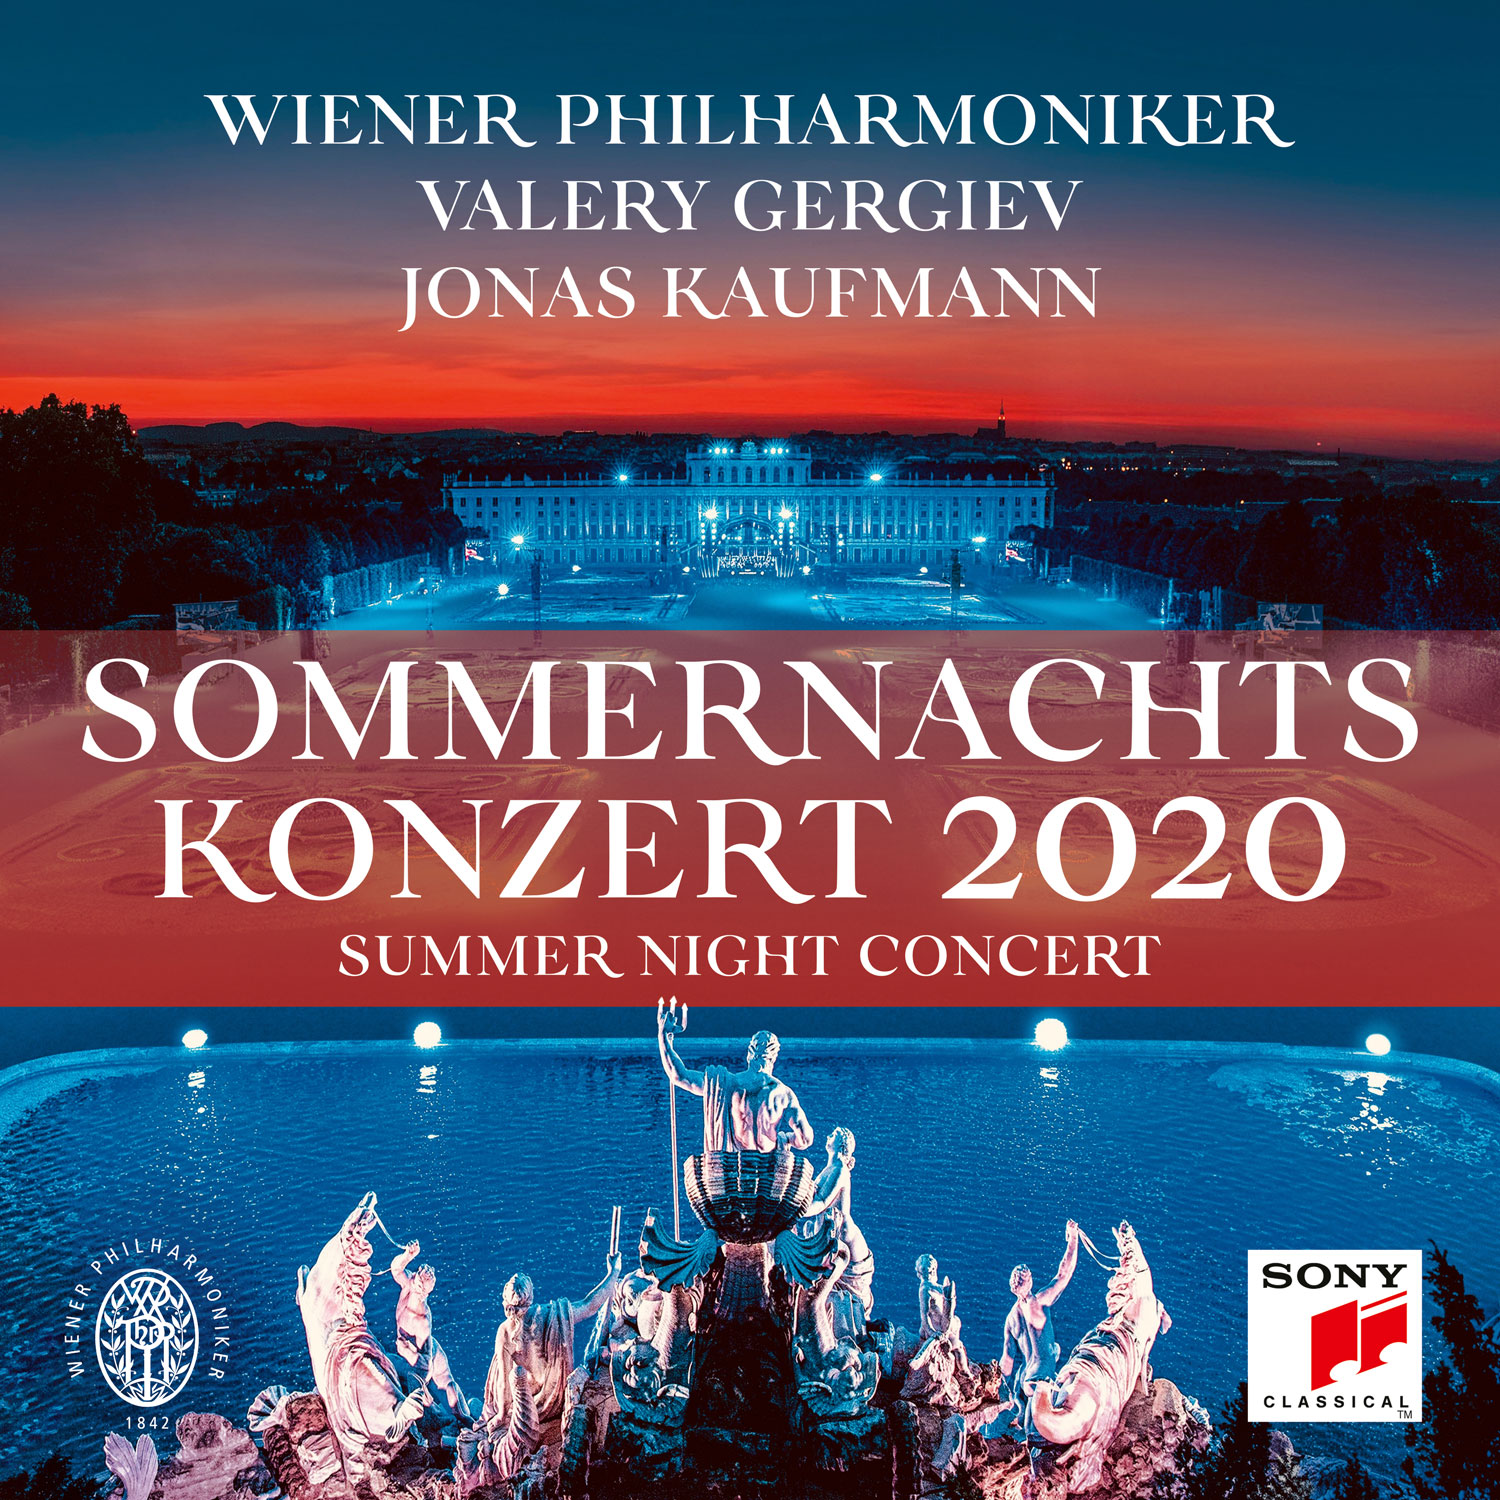 Wiener Philharmoniker - Summer Night Concert 2020